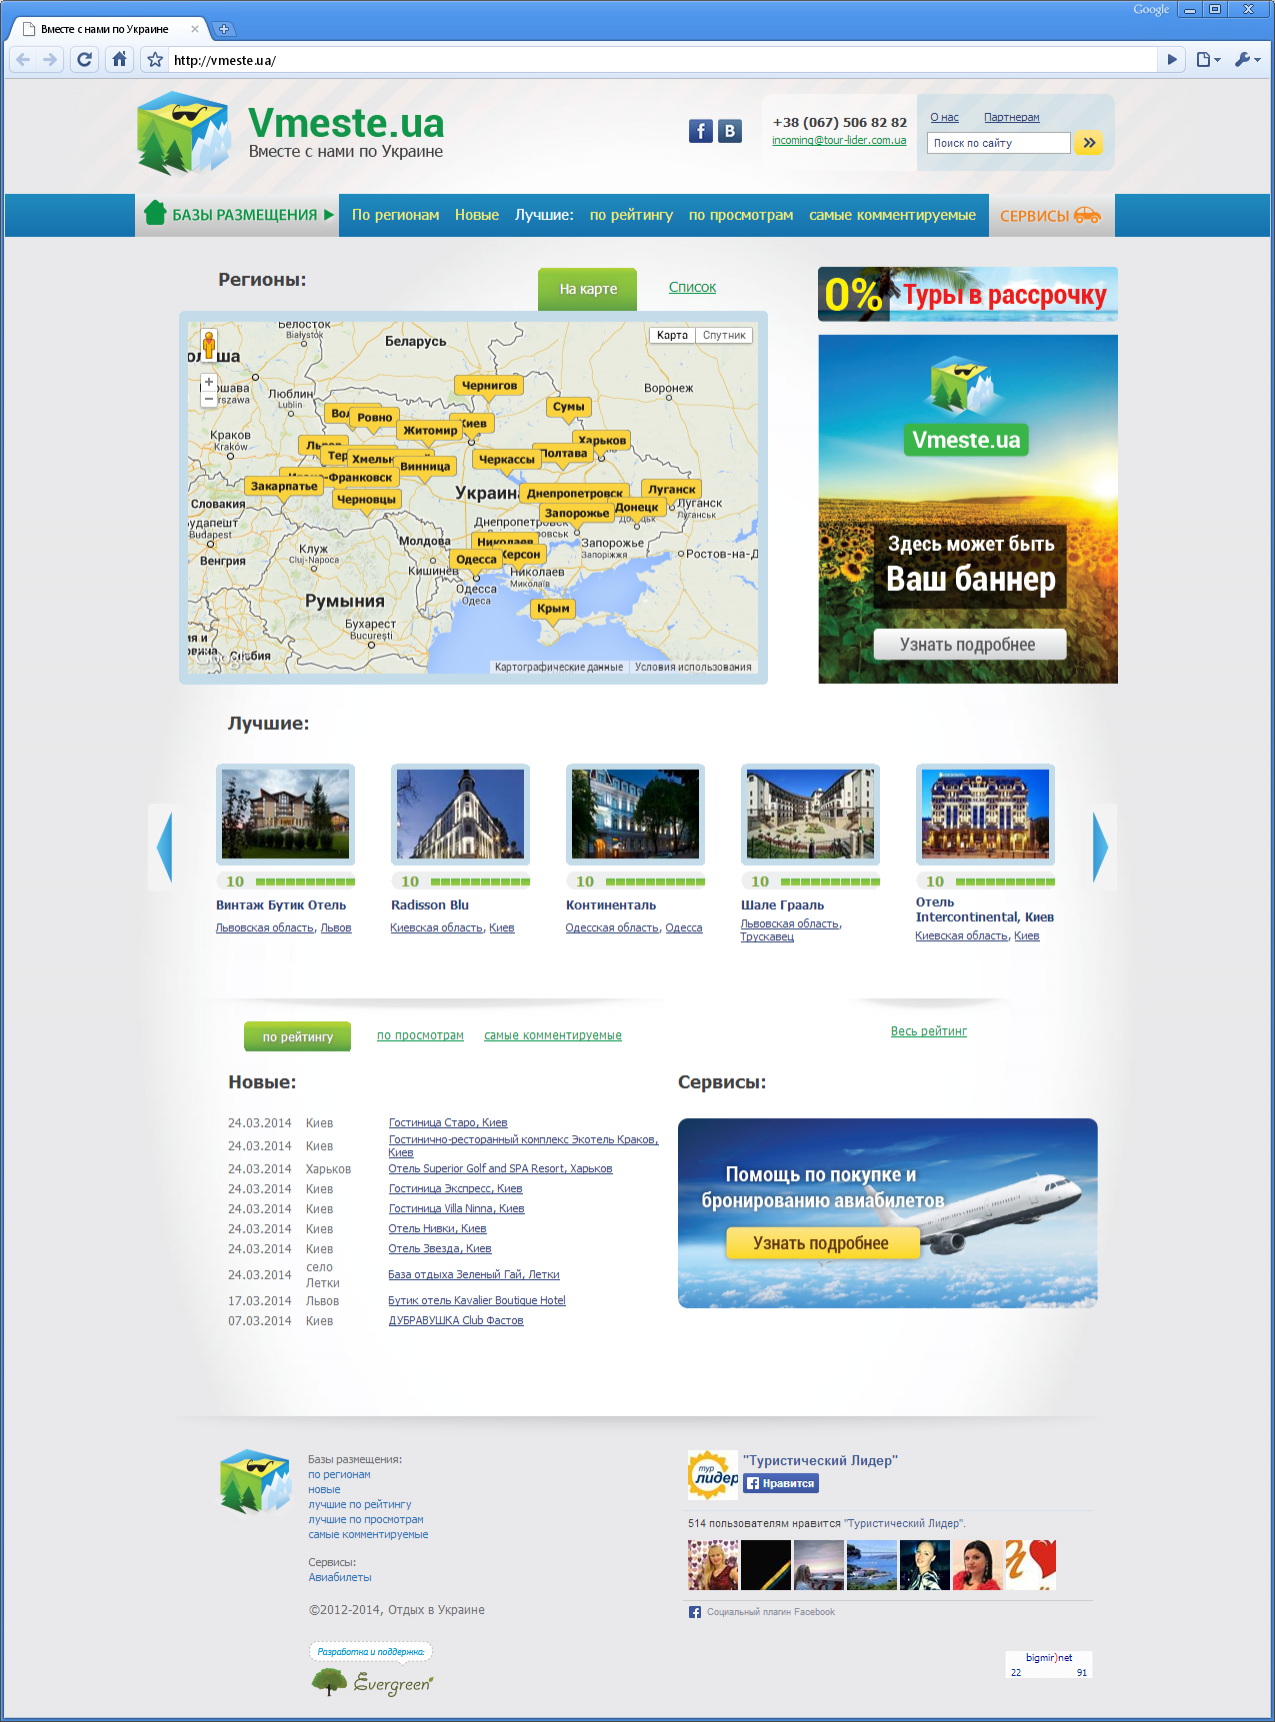 Портал-помощник для путешествующих по Украине. Все от отелей и санаториев до бронирования авиабилетов и экскурсий | проекты Evergreen 9